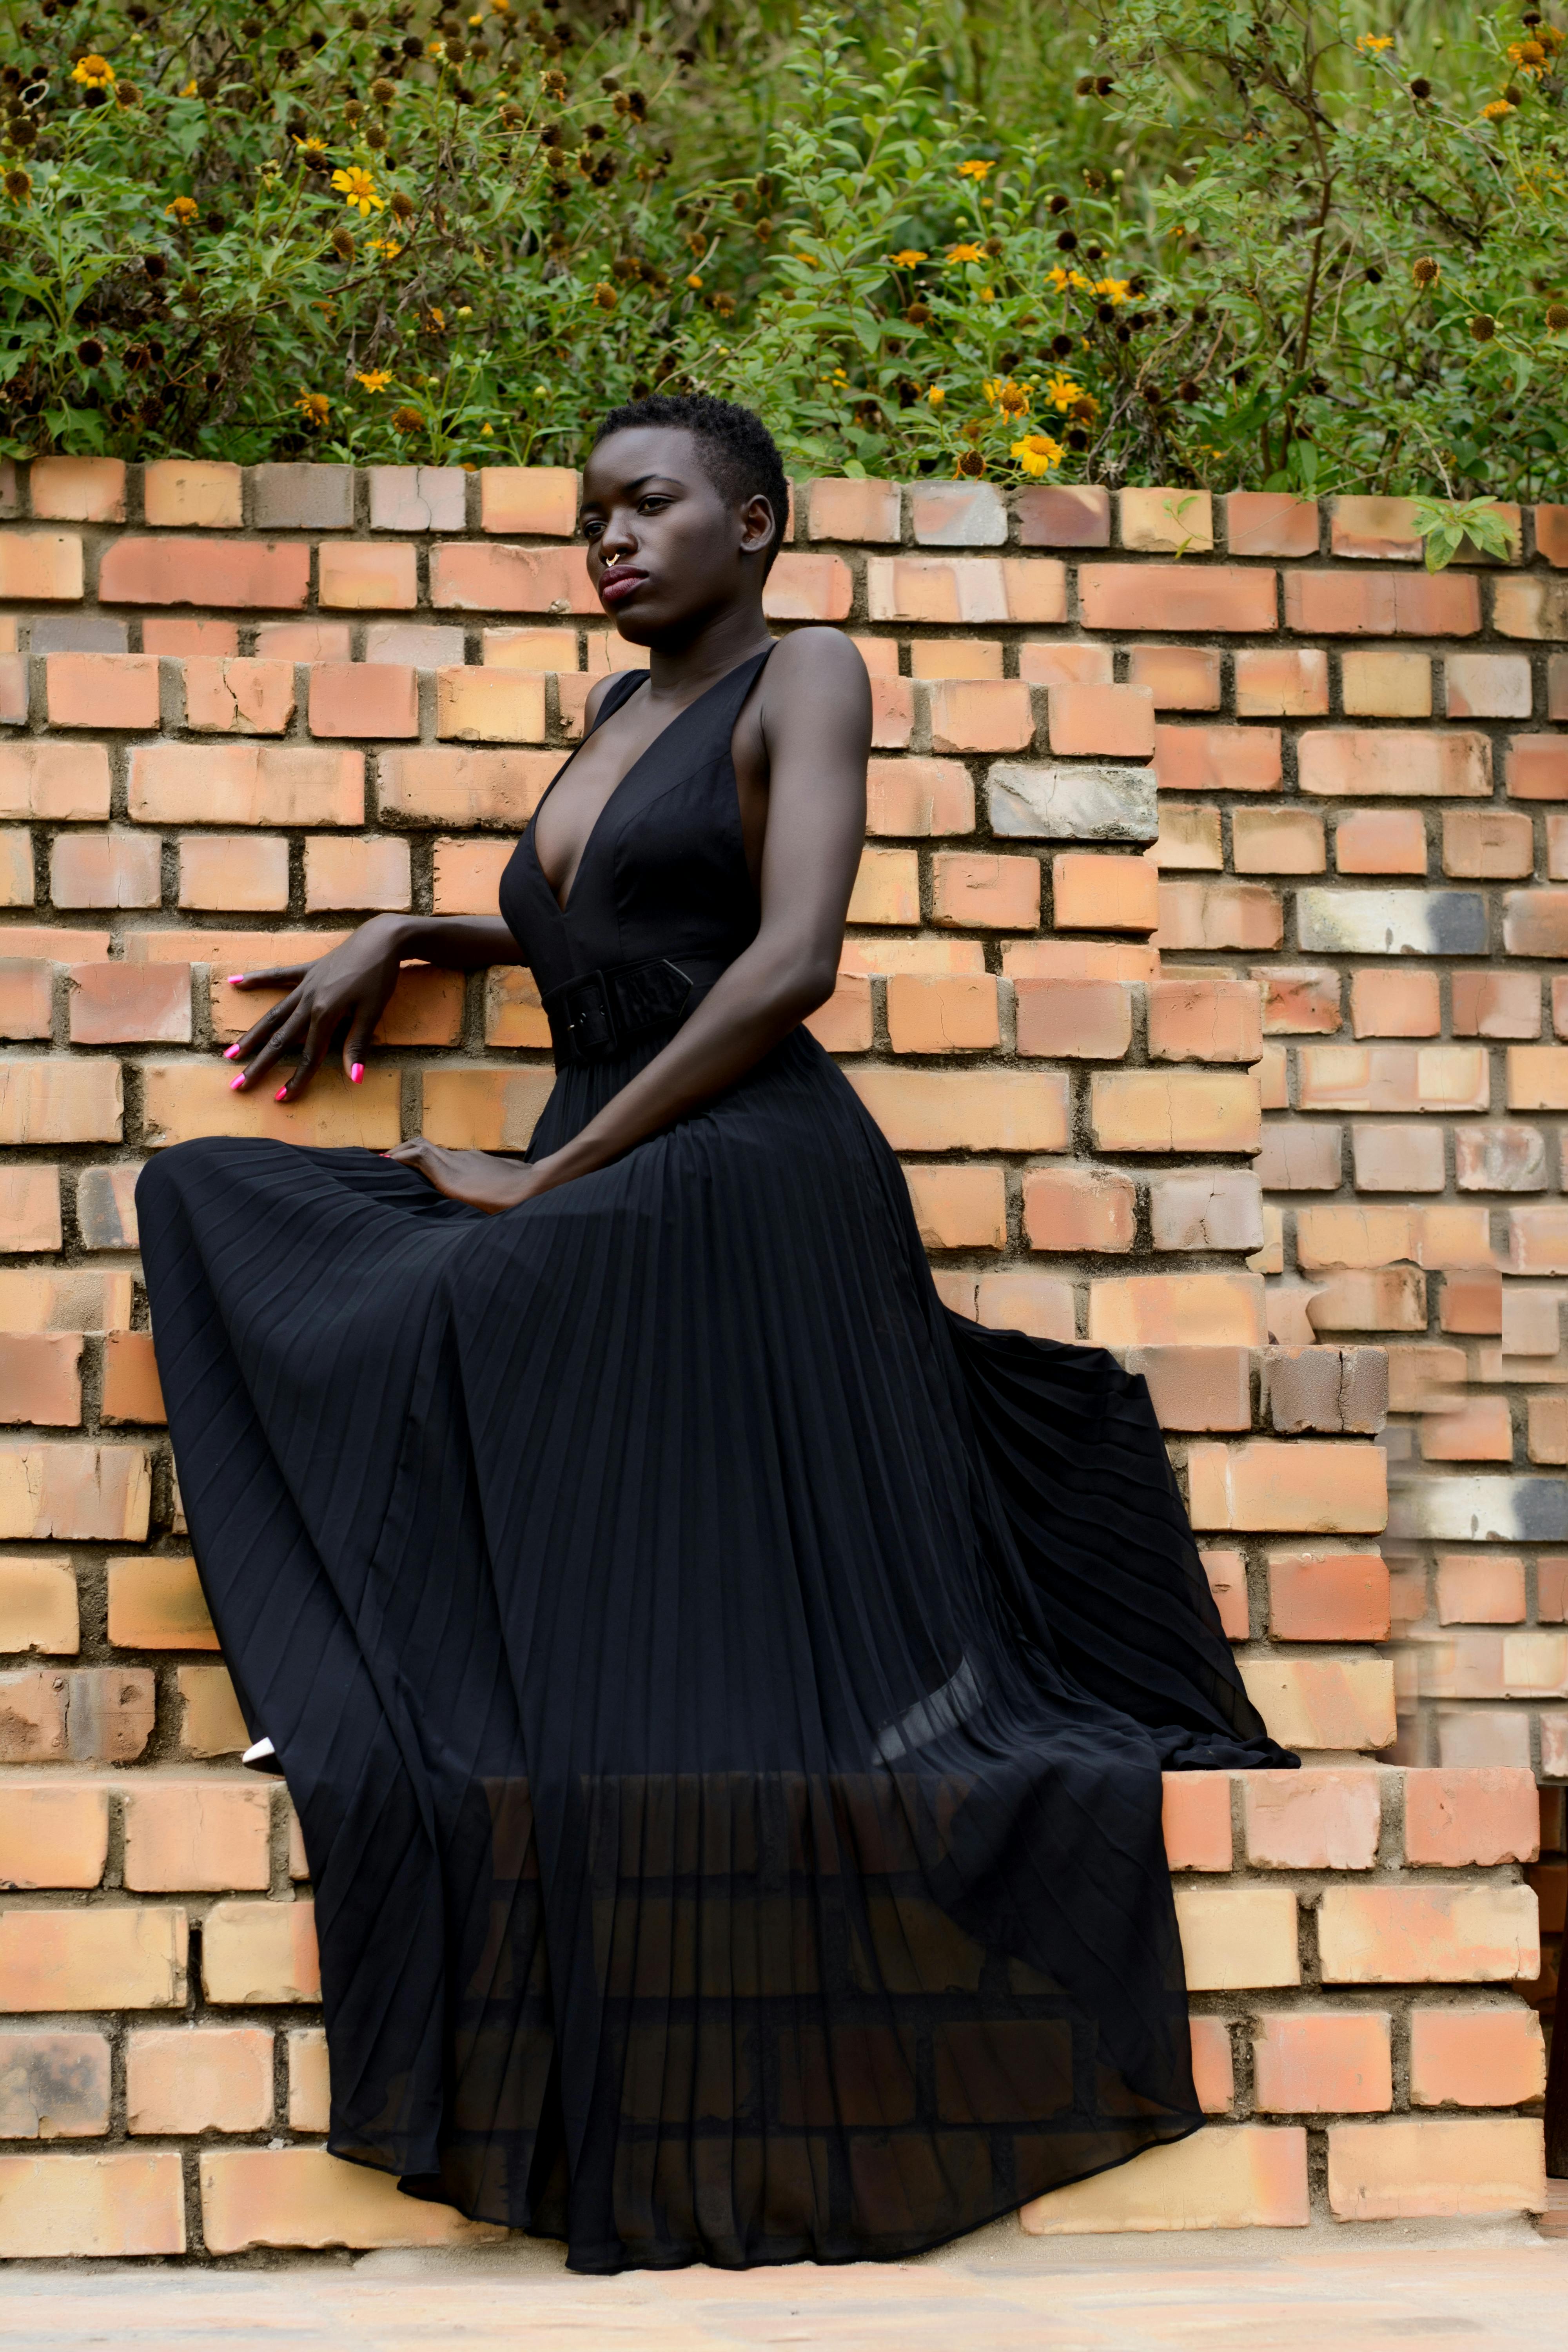 Black dress Stock Photos ☀ Images ...